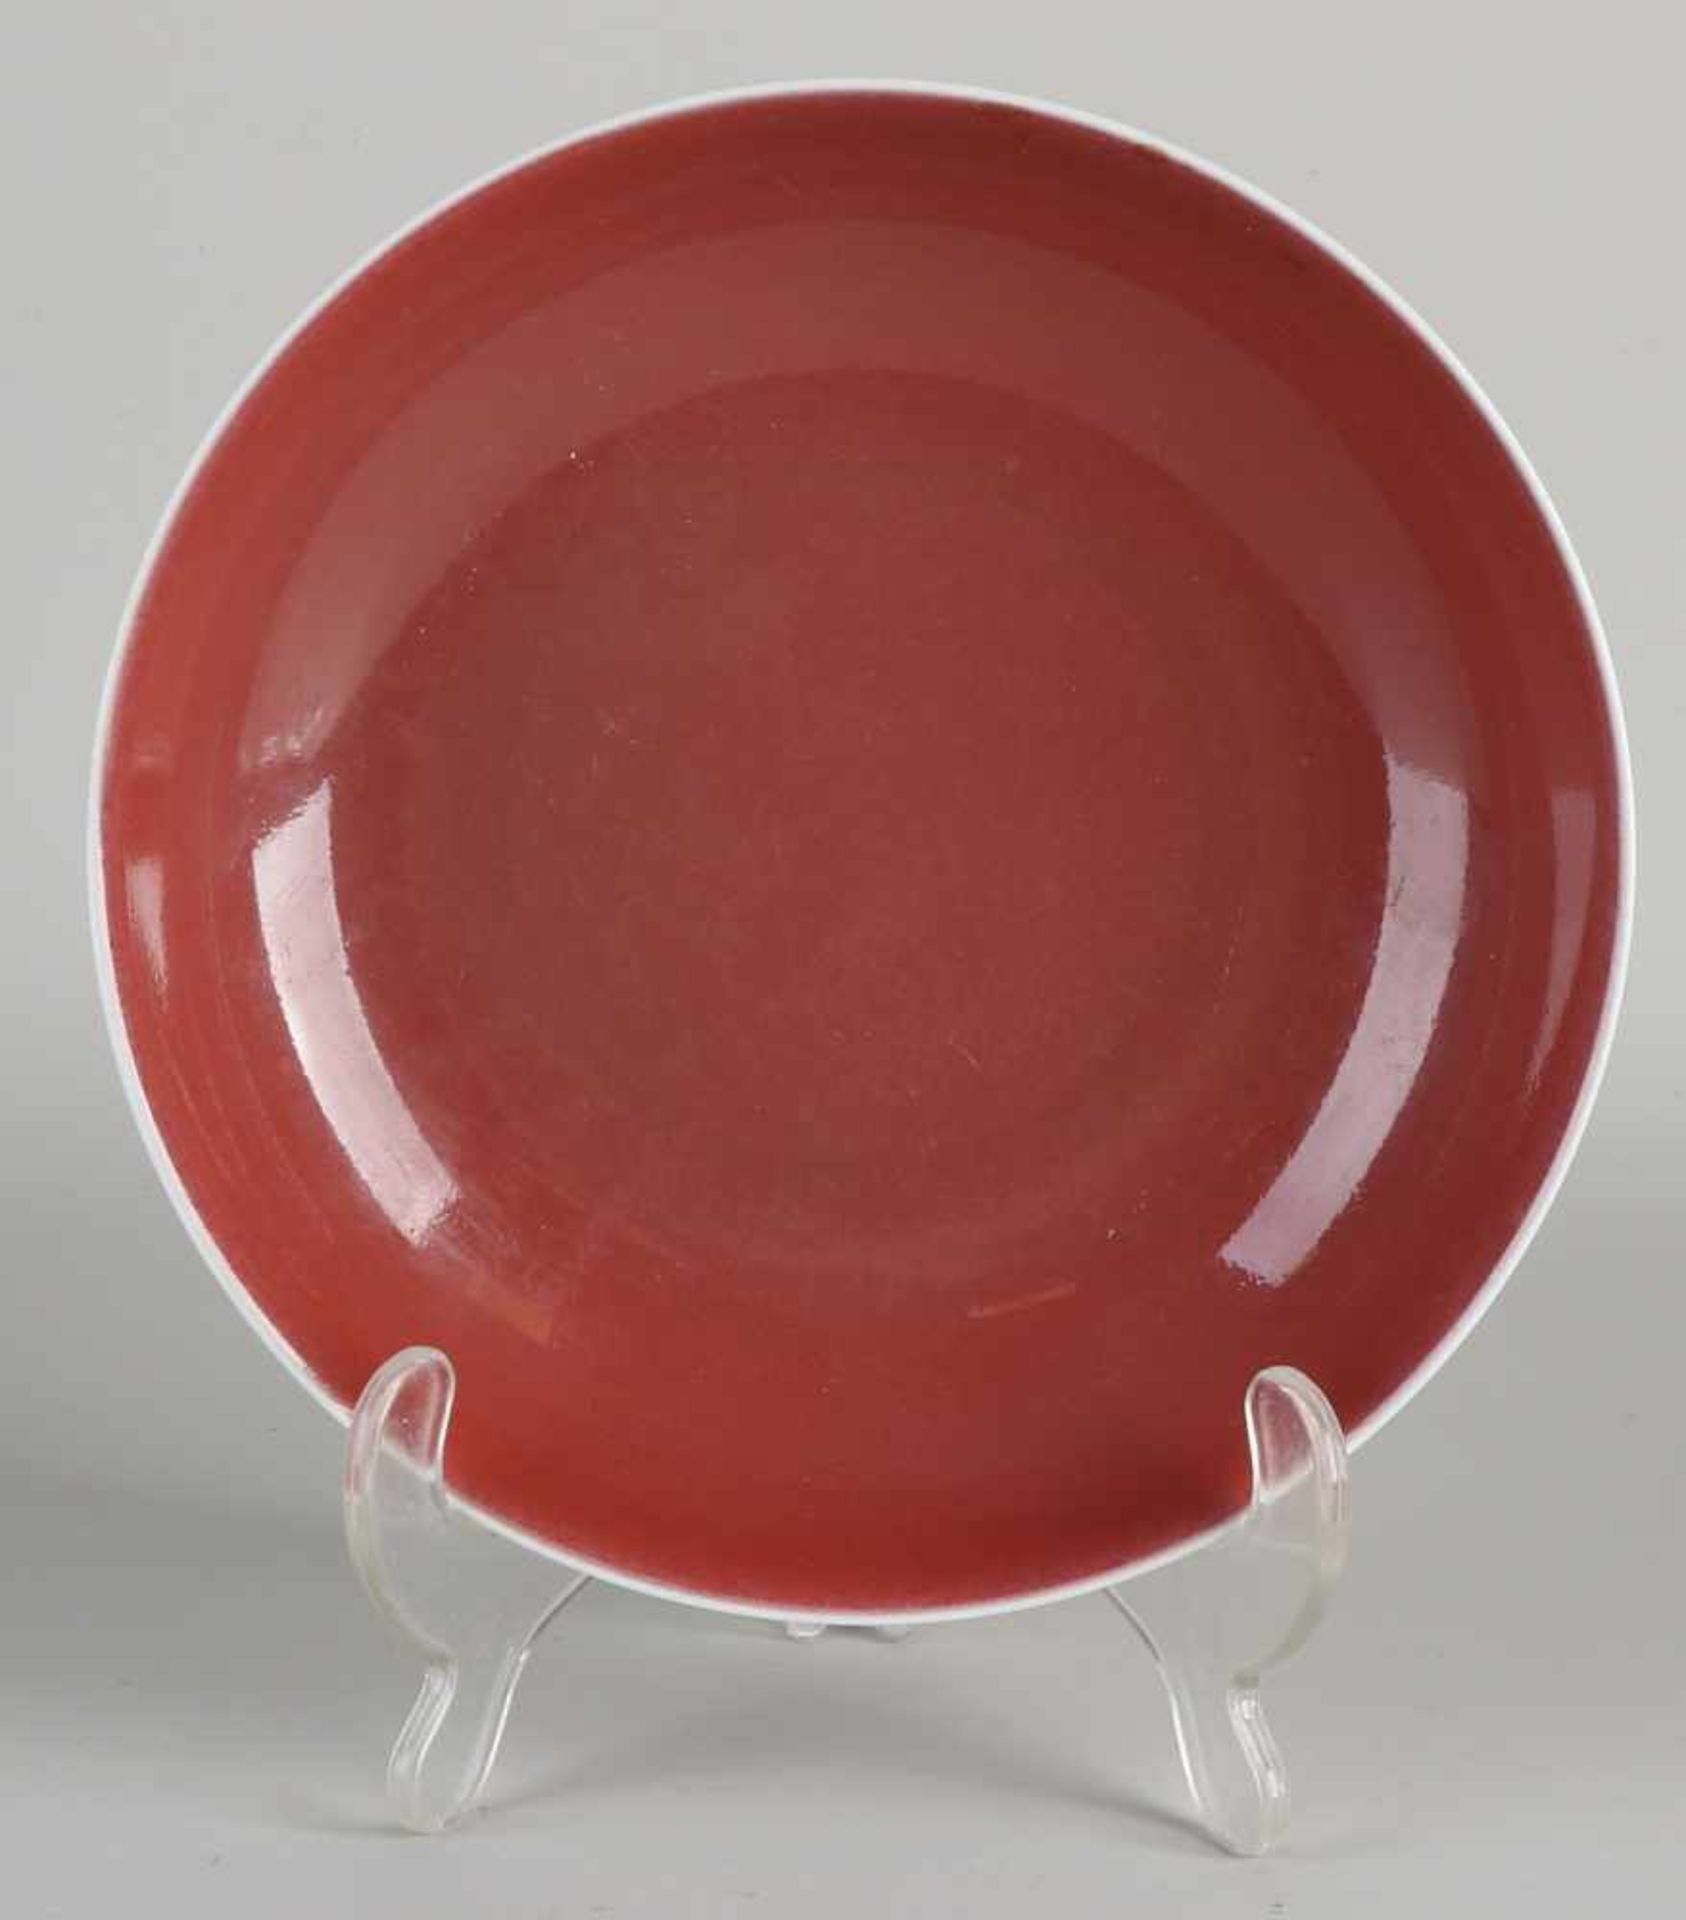 Chinesischer Porzellanteller mit roter Glasur. Mit unterer Markierung. Abmessungen: H 4,5 x Ø 18,